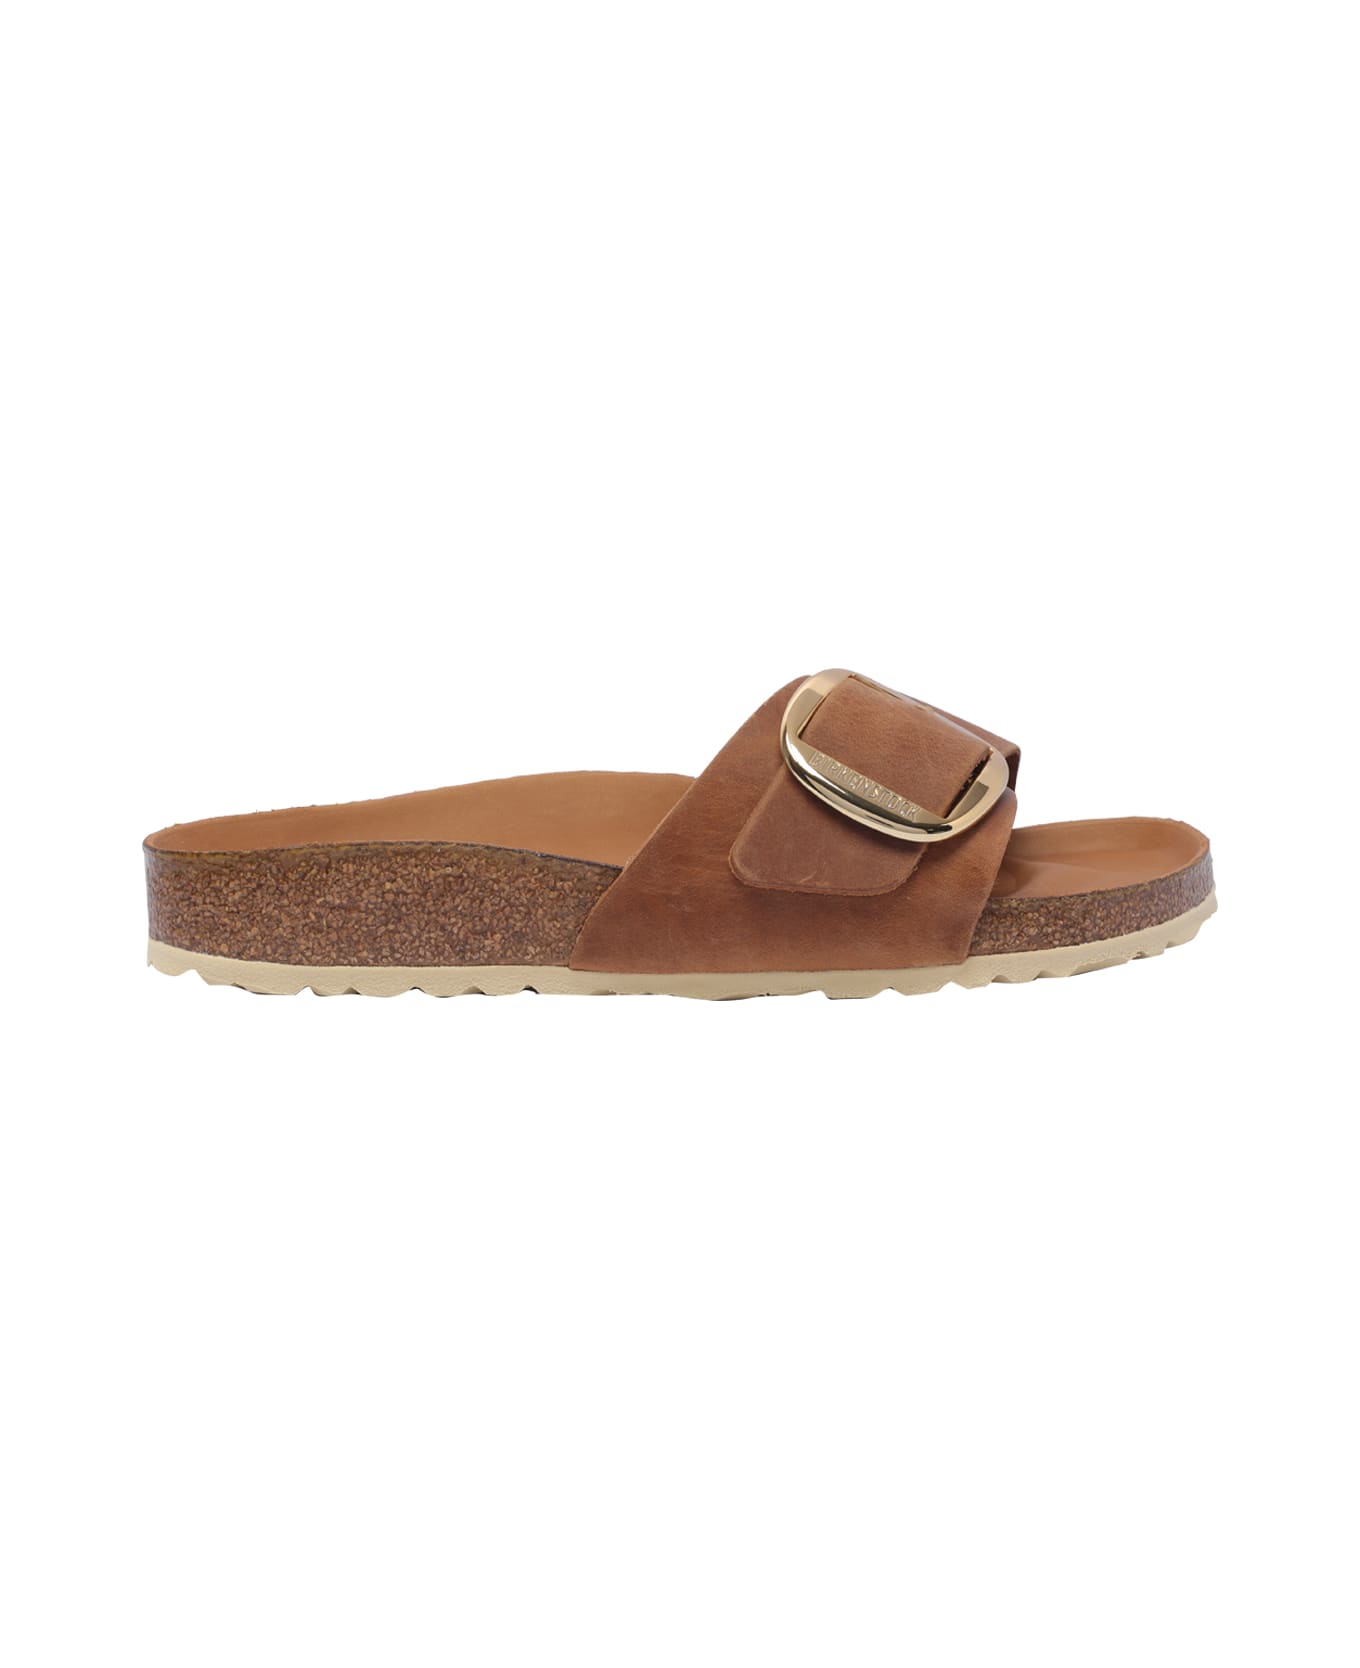 Birkenstock Madrid Sandals - Brown